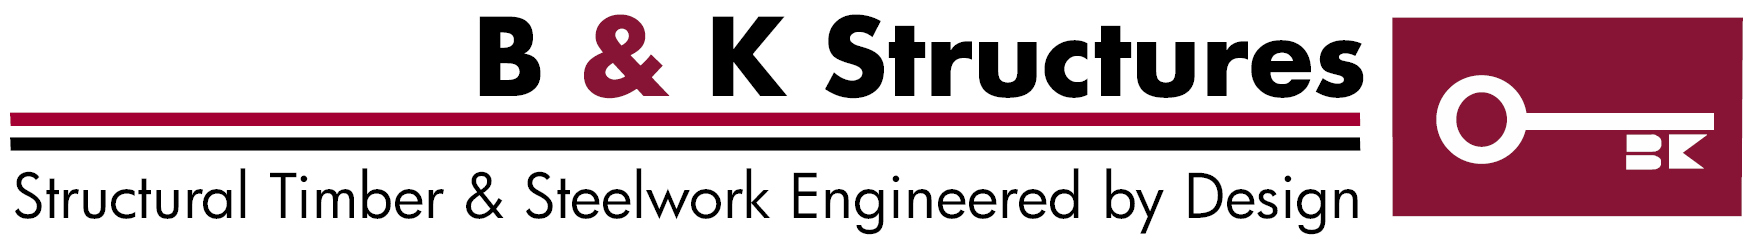 B & K Structures Ltd